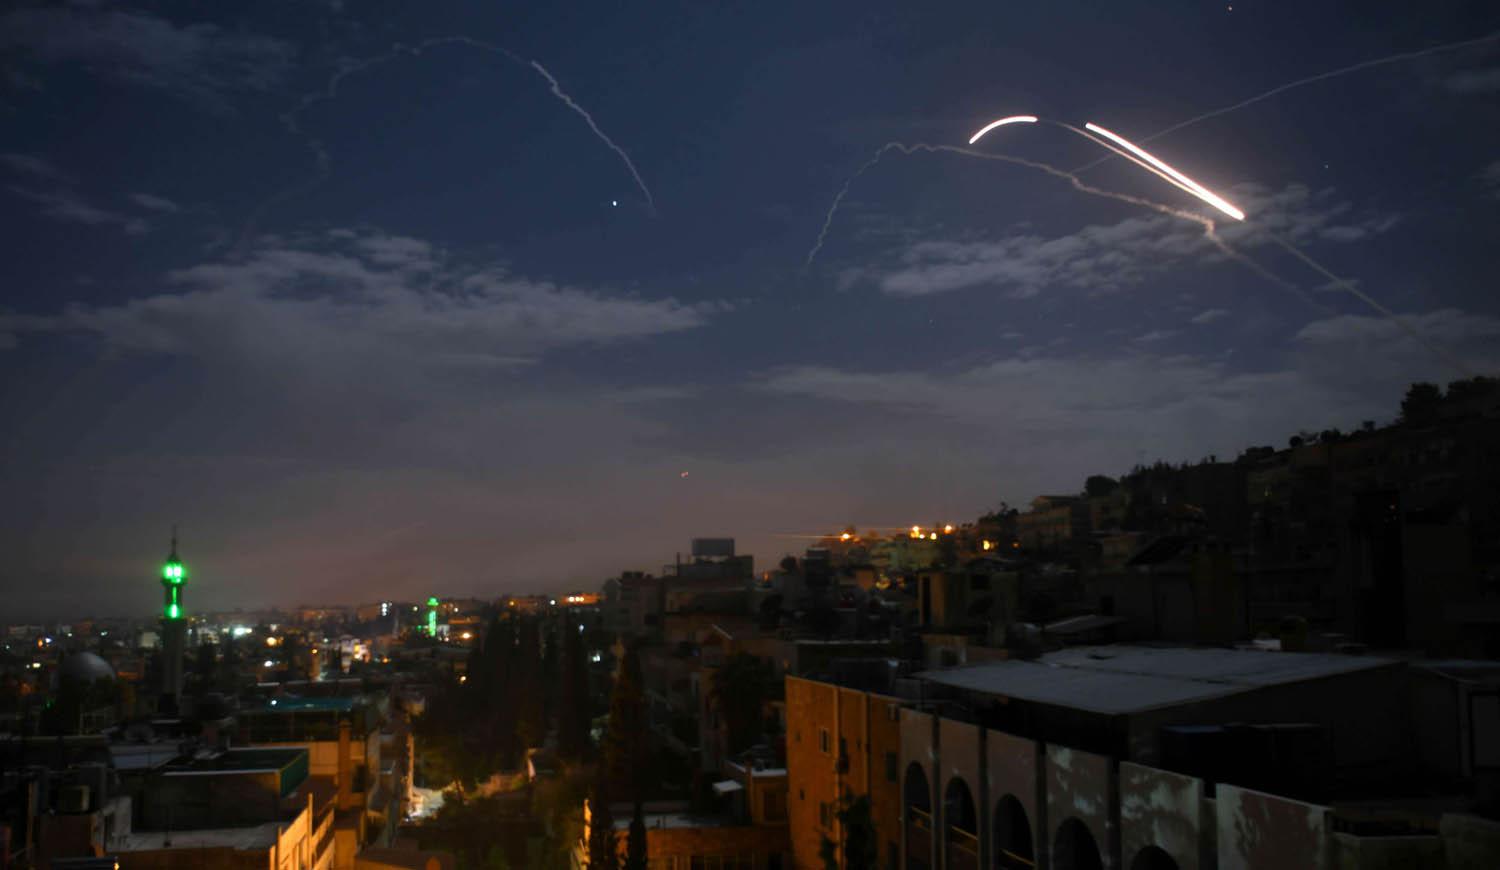 مضادات أرضية سورية تتصدى لصواريخ إسرائيلية تستهدف مواقع إيرانية في محيط دمشق